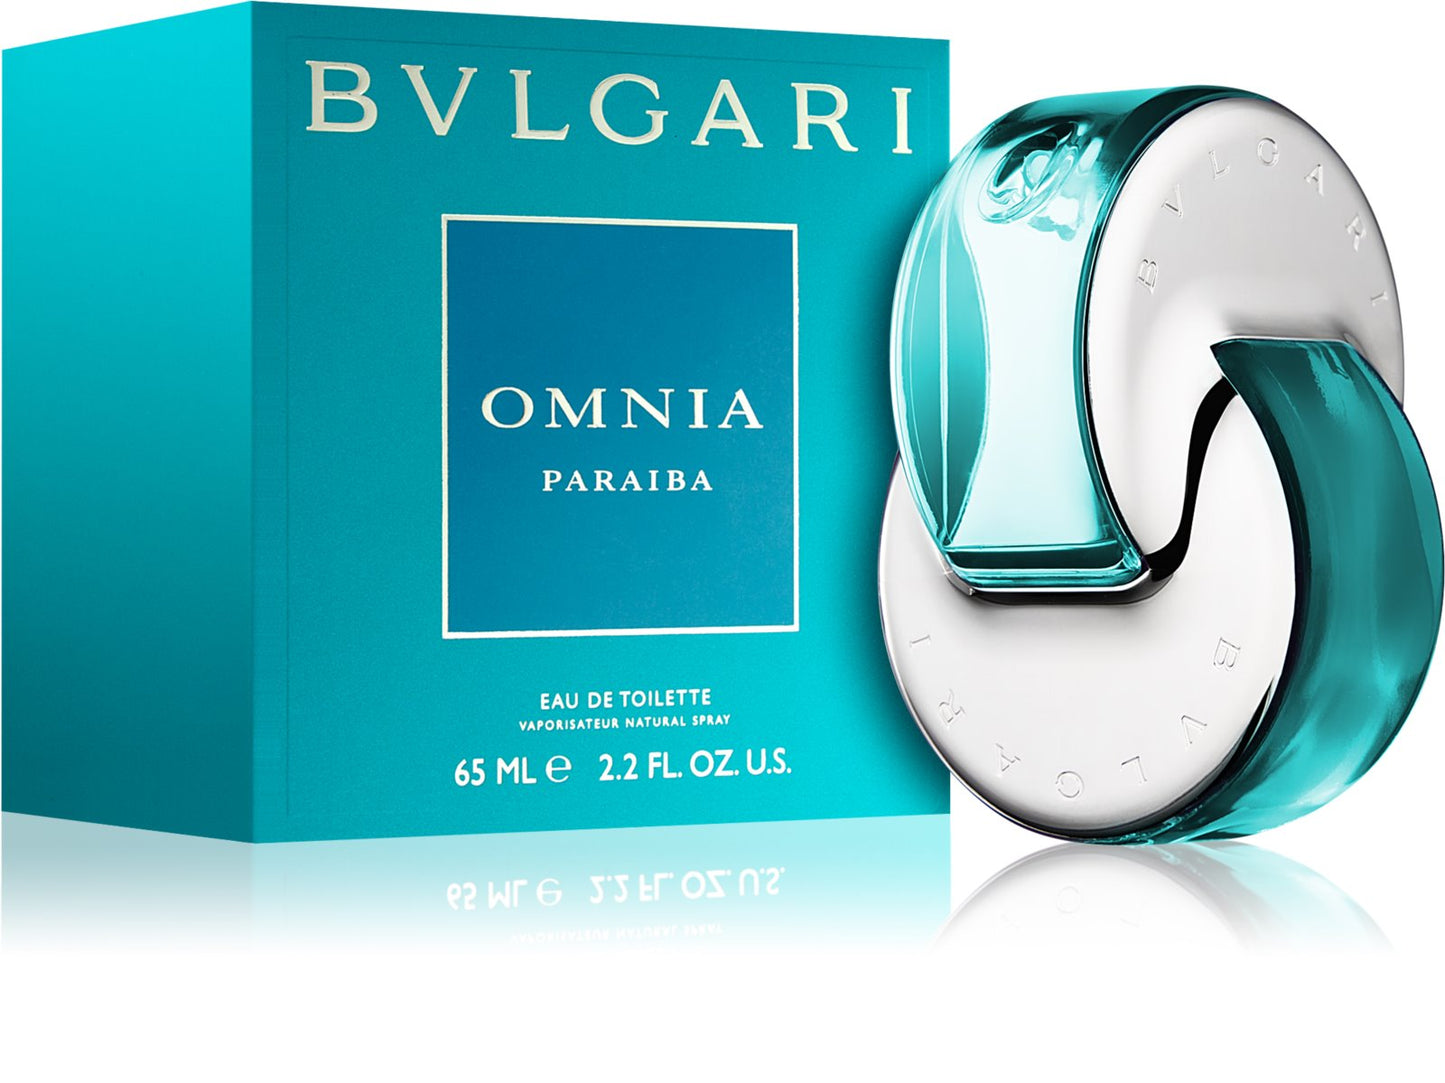 BVLGARI Omnia Paraiba EDT - Perfume Planet 